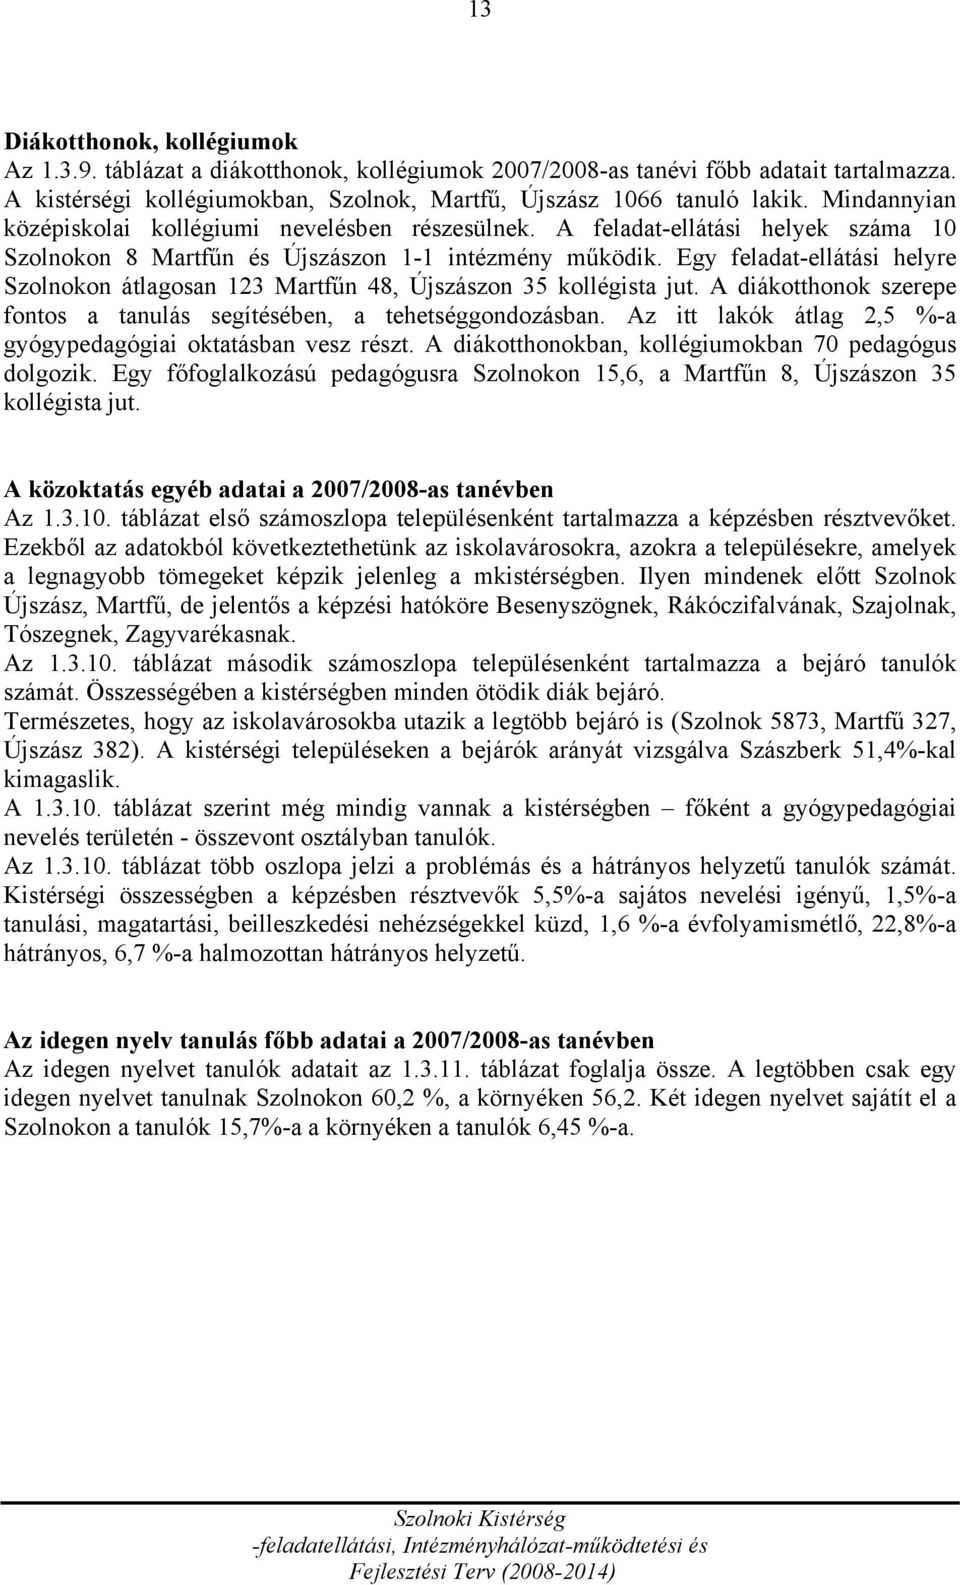 Egy feladat-ellátási helyre Szolnokon átlagosan 123 Martfűn 48, Újszászon 35 kollégista jut. A diákotthonok szerepe fontos a tanulás segítésében, a tehetséggondozásban.